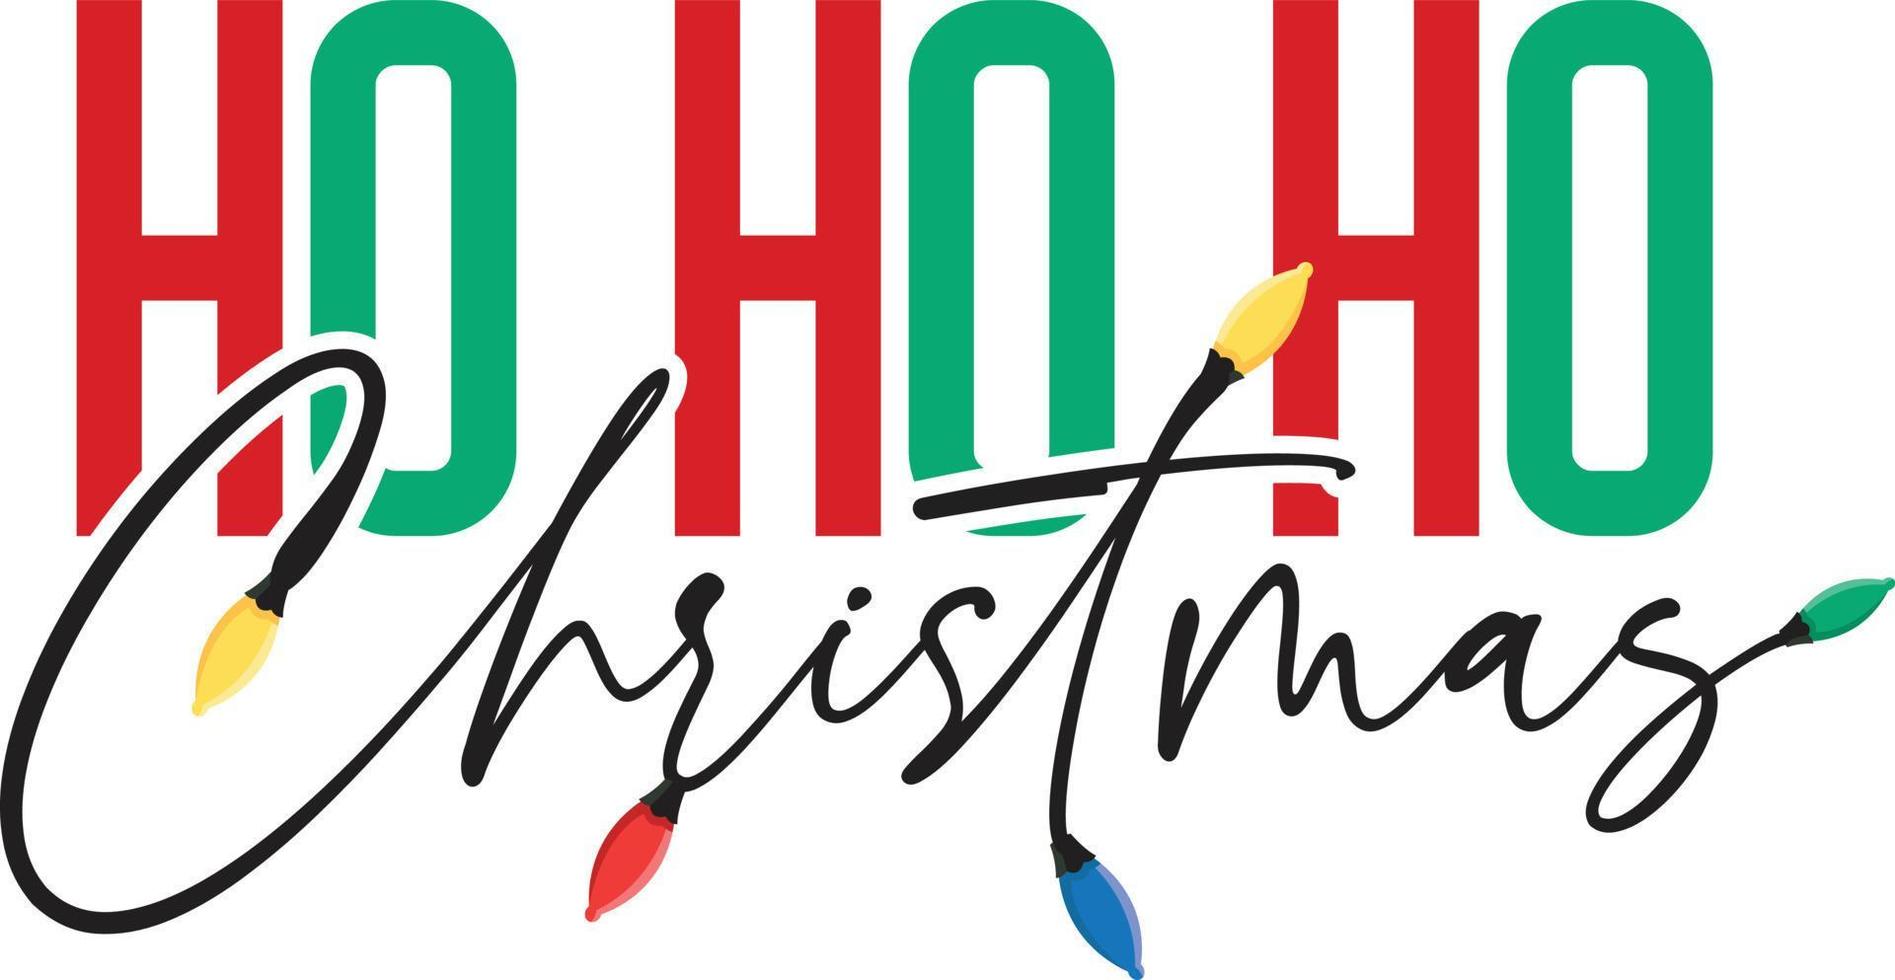 ho ho ho - tipografía de saludo navideño, con luces, citas navideñas y decoraciones. vector